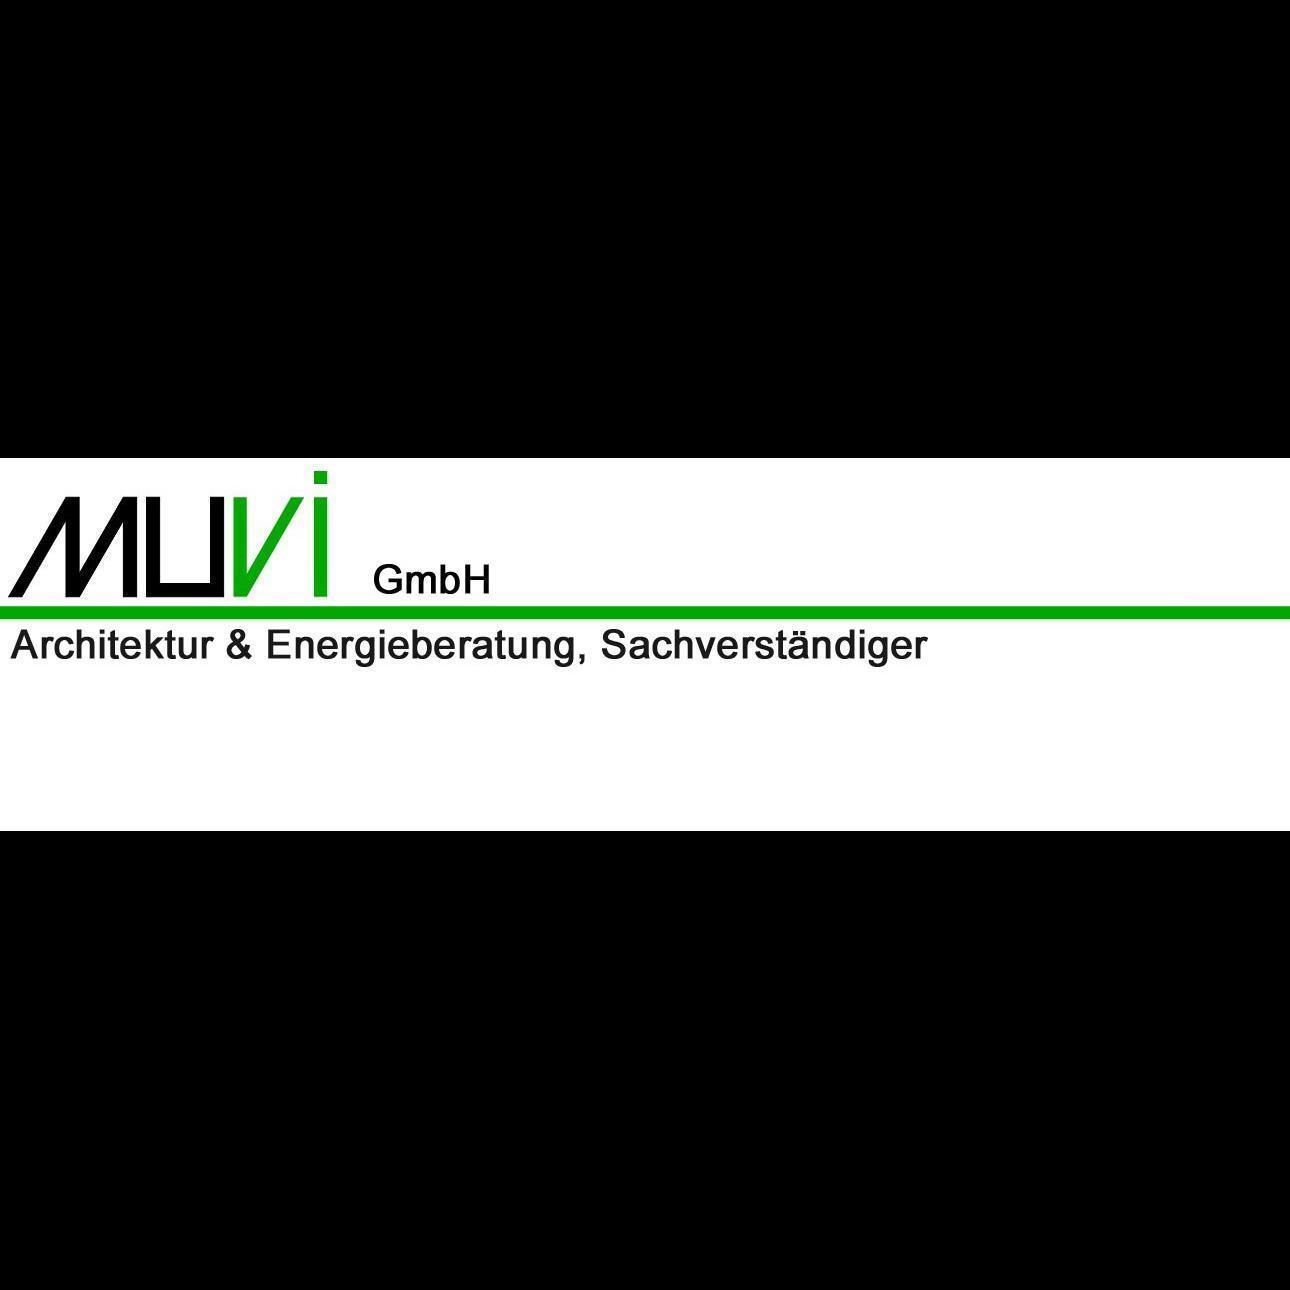 Logo MUVI GmbH